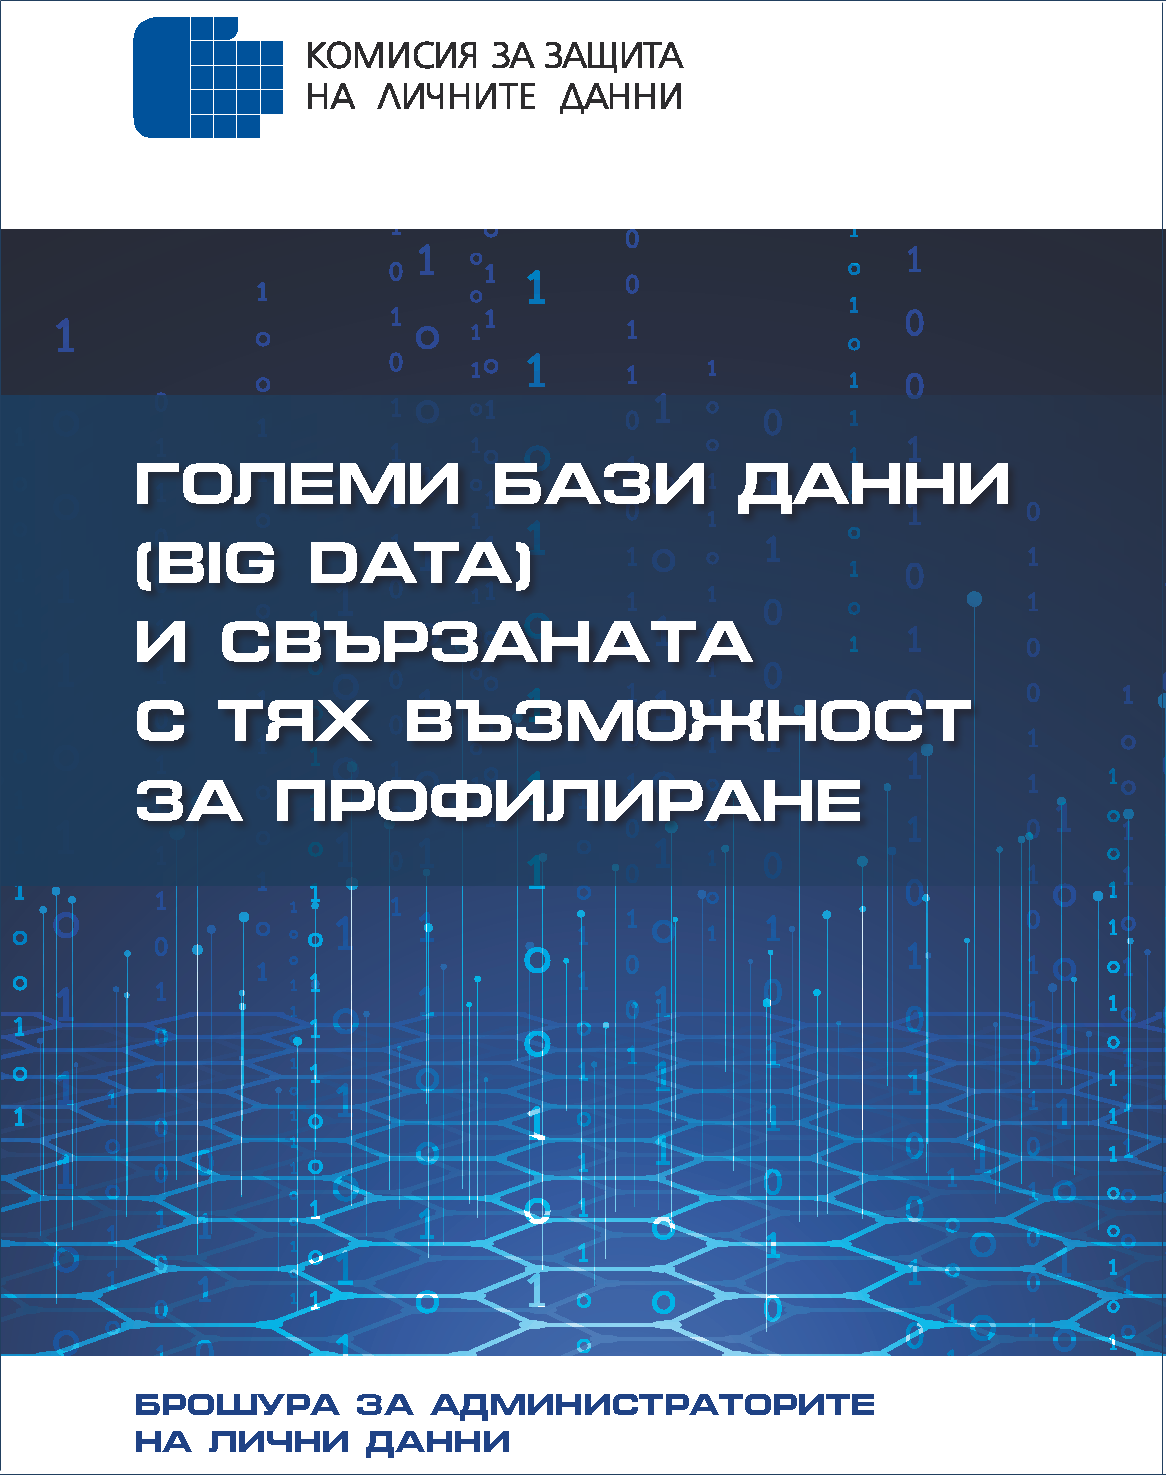 Големи бази данни (Big Data) и свързаната с тях възможност за профилиране (брошура за администраторите на лични данни)